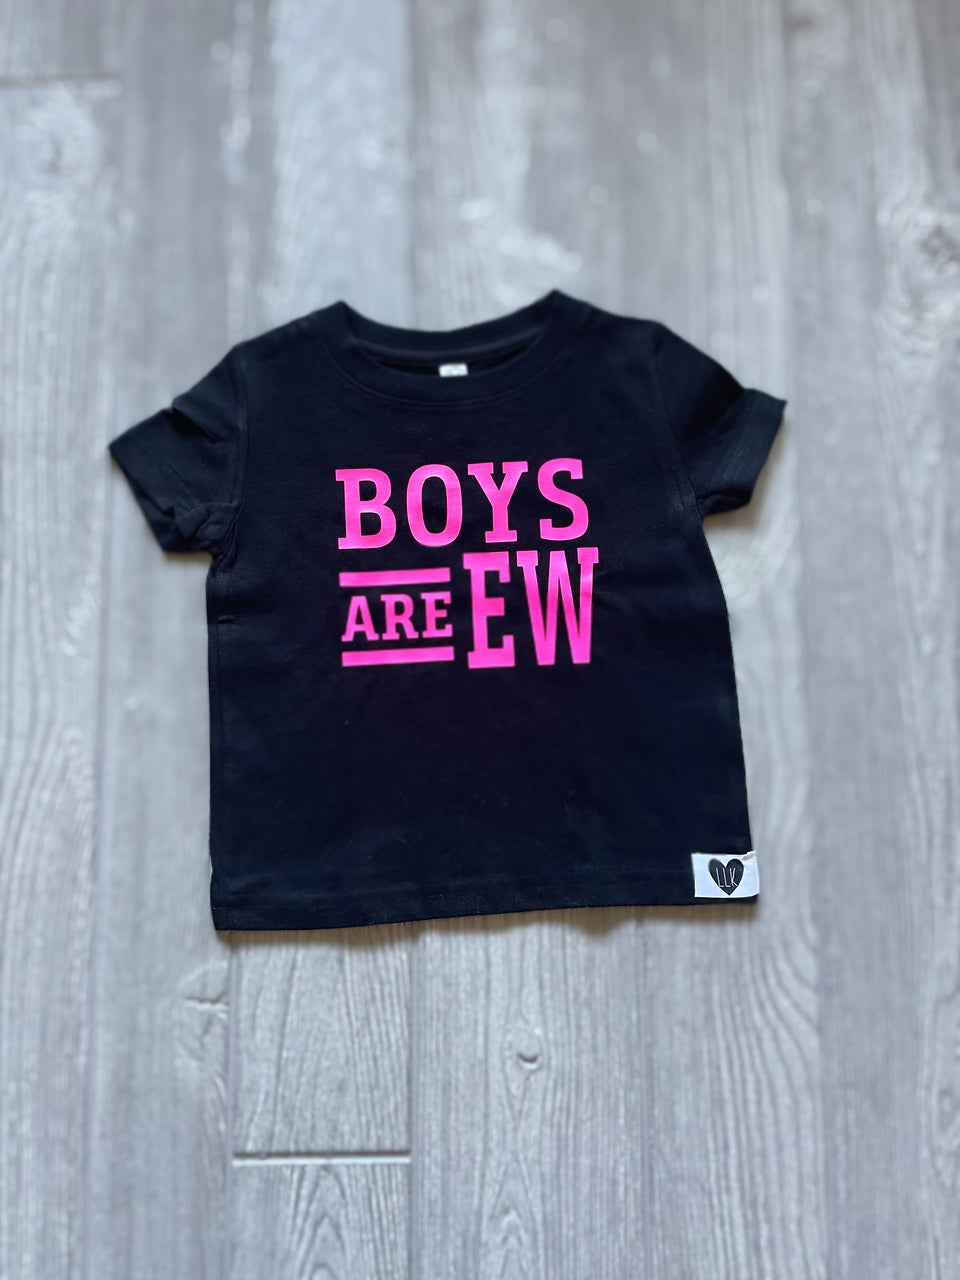 Boys are ew (tee)